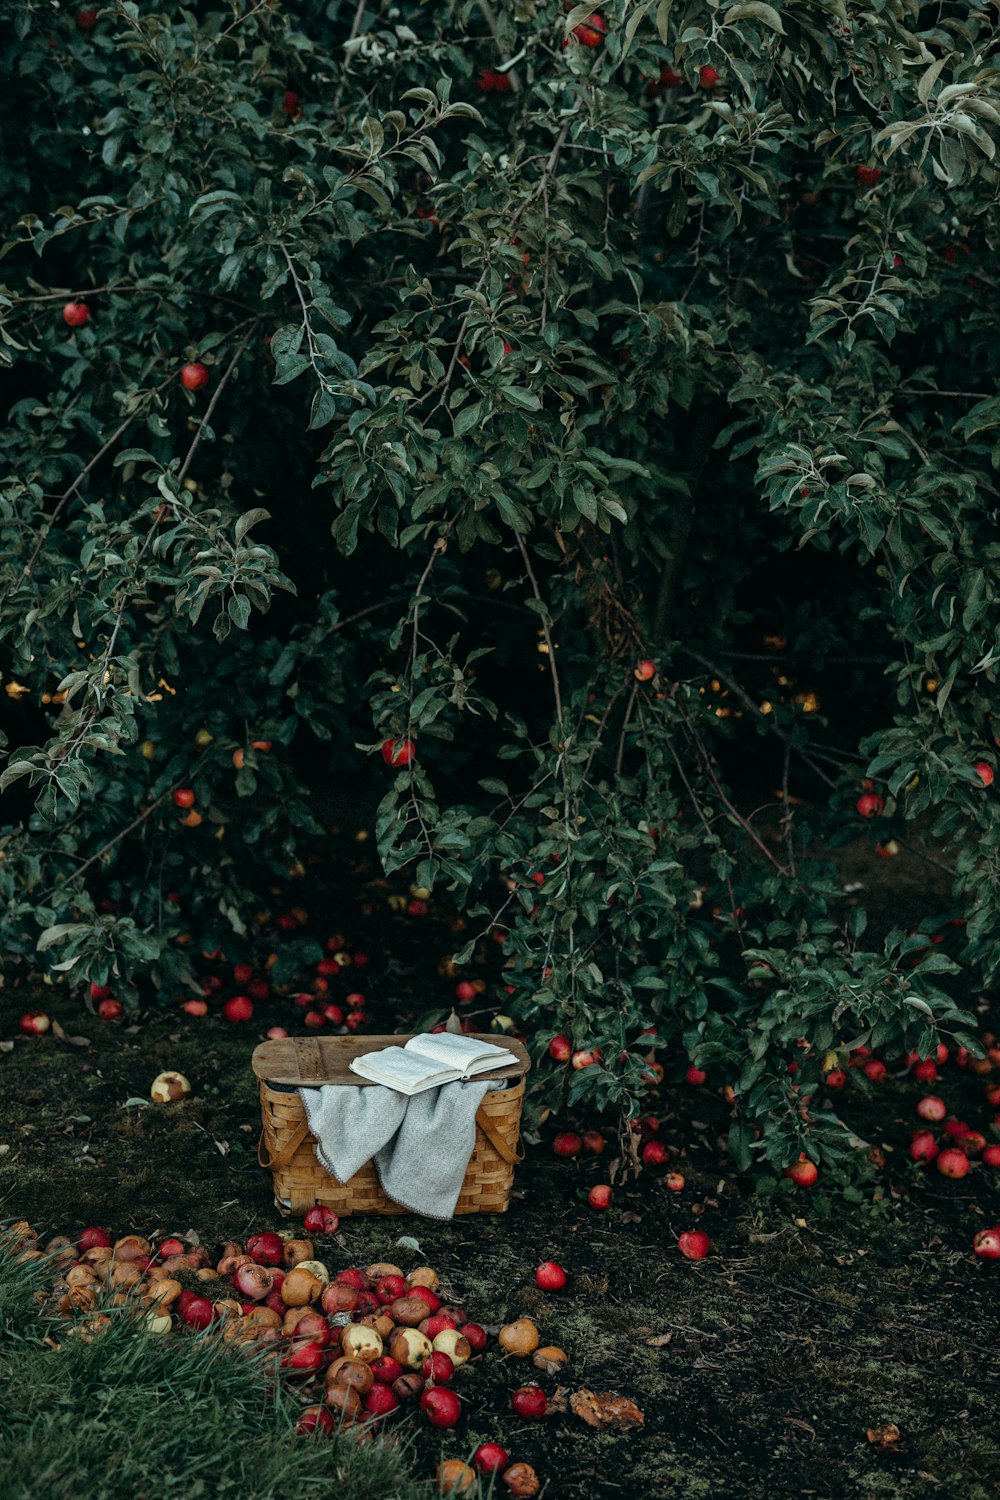 Foto de la canasta cerca de las frutas y el árbol